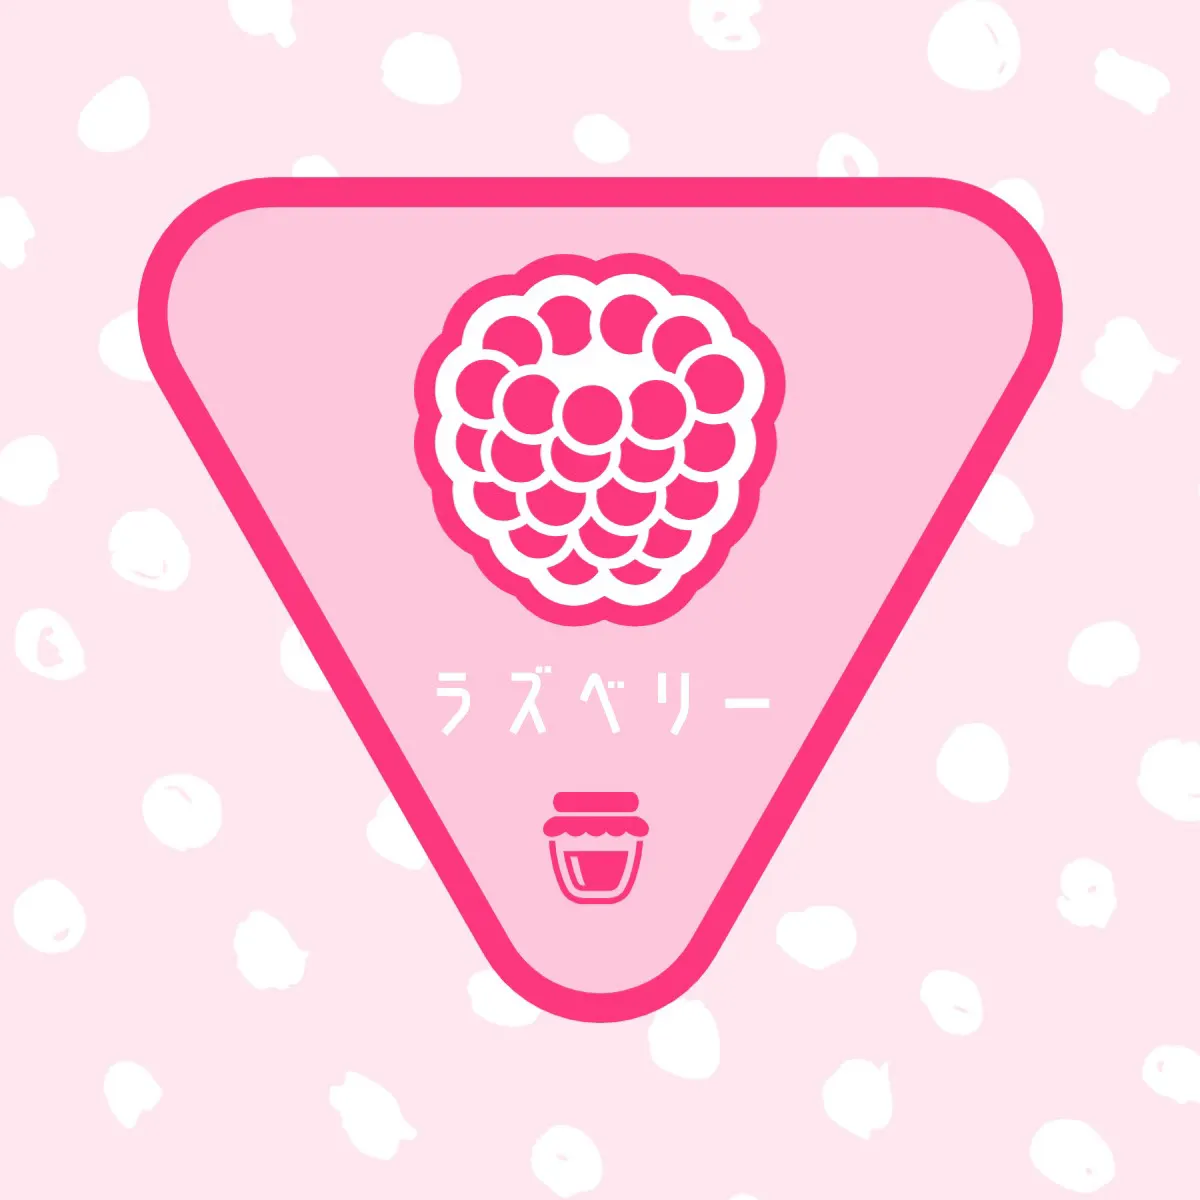 Raspberry triangle sticker logo